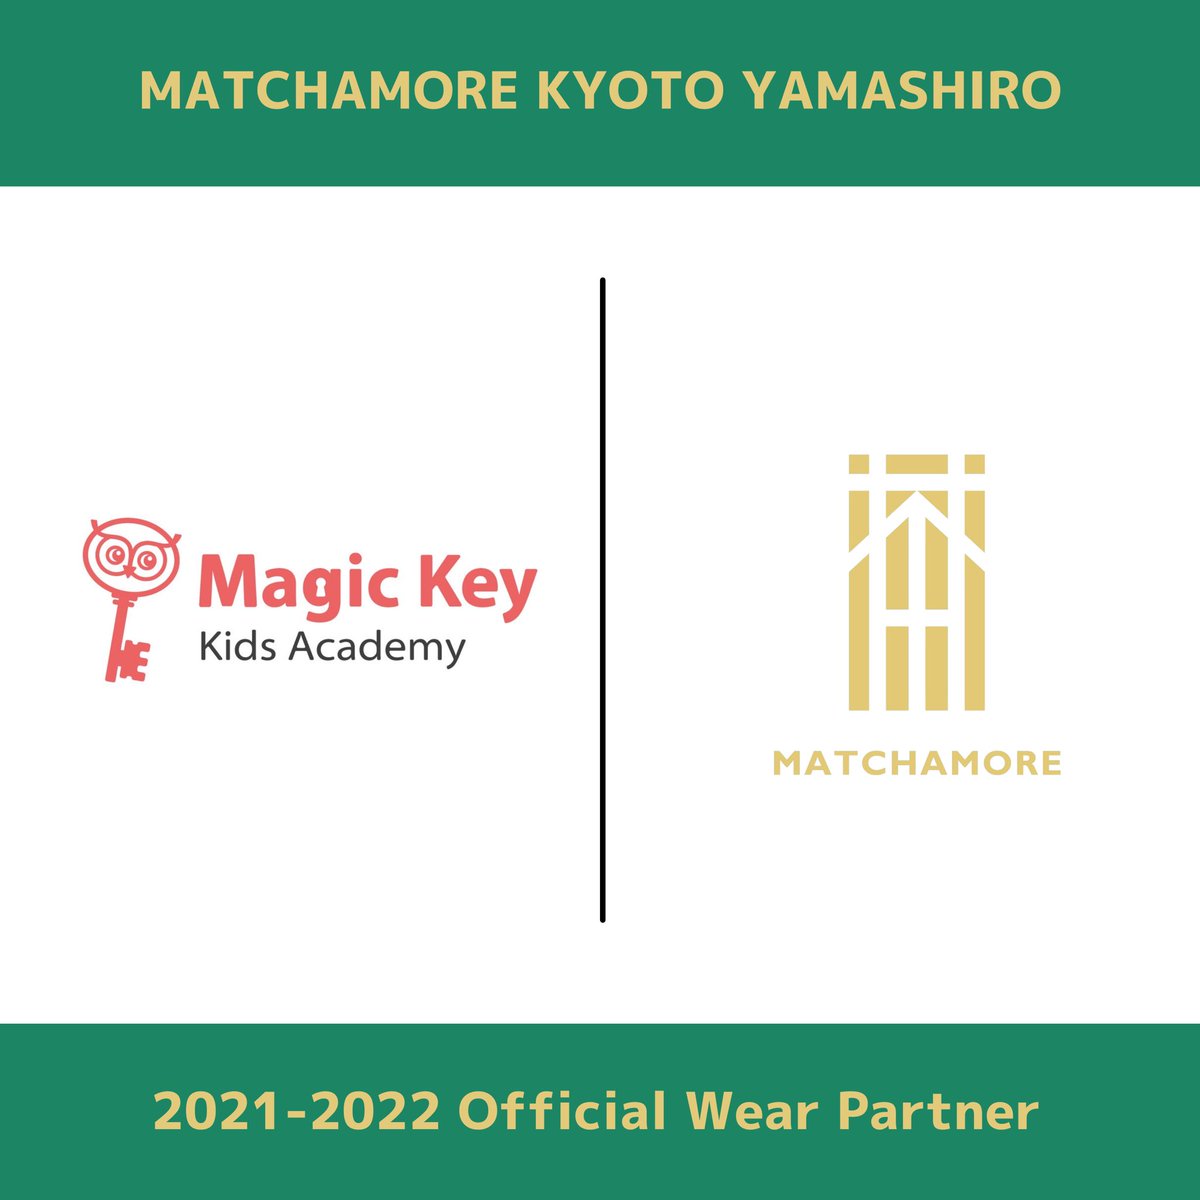 【パートナー契約締結のお知らせ】
この度、マッチャモーレ京都山城は
「Magic Key Kids Academy」様と
パートナー契約を締結いたしましたので
お知らせいたします。

詳細はコチラ▼
matchamore.kyoto.jp/2021/11/17/mag…